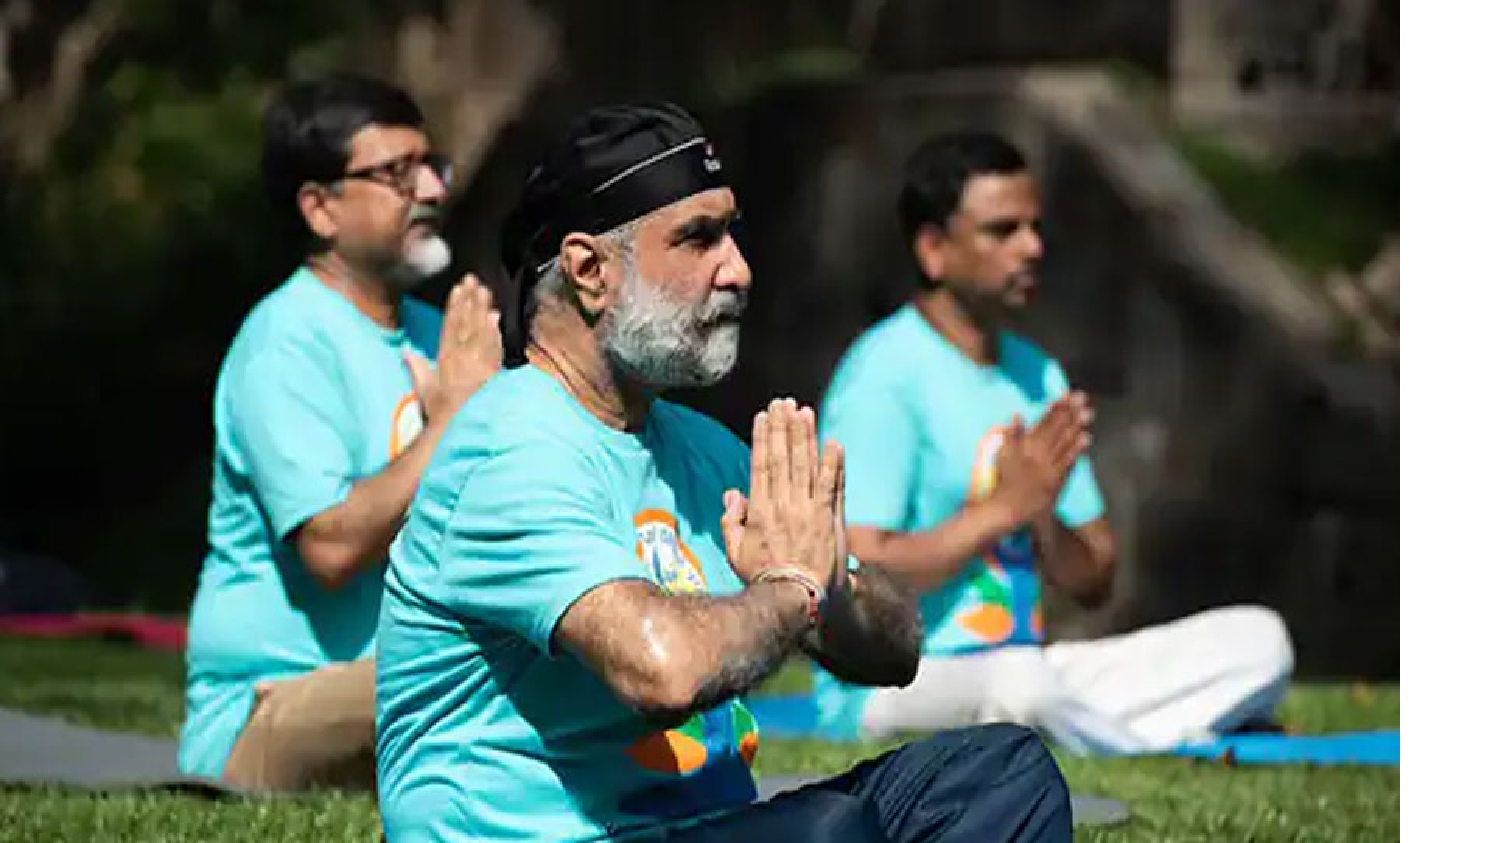 योग में लोगों के शारीरिक एवं मानसिक स्वास्थ्य में सुधार लाने की क्षमता है : संधू